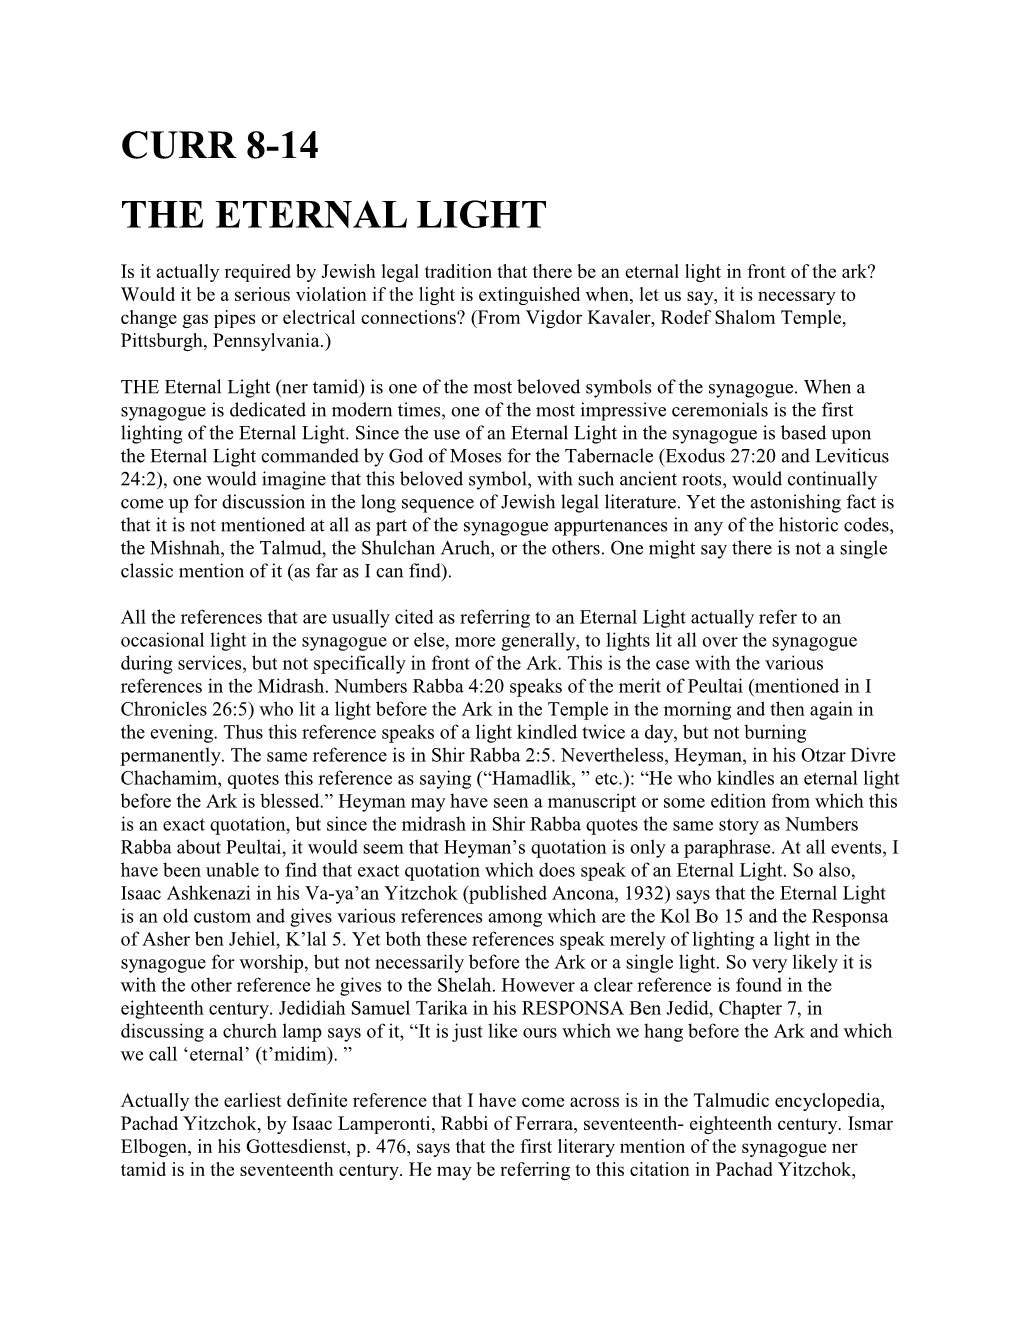 Curr 8-14 the Eternal Light